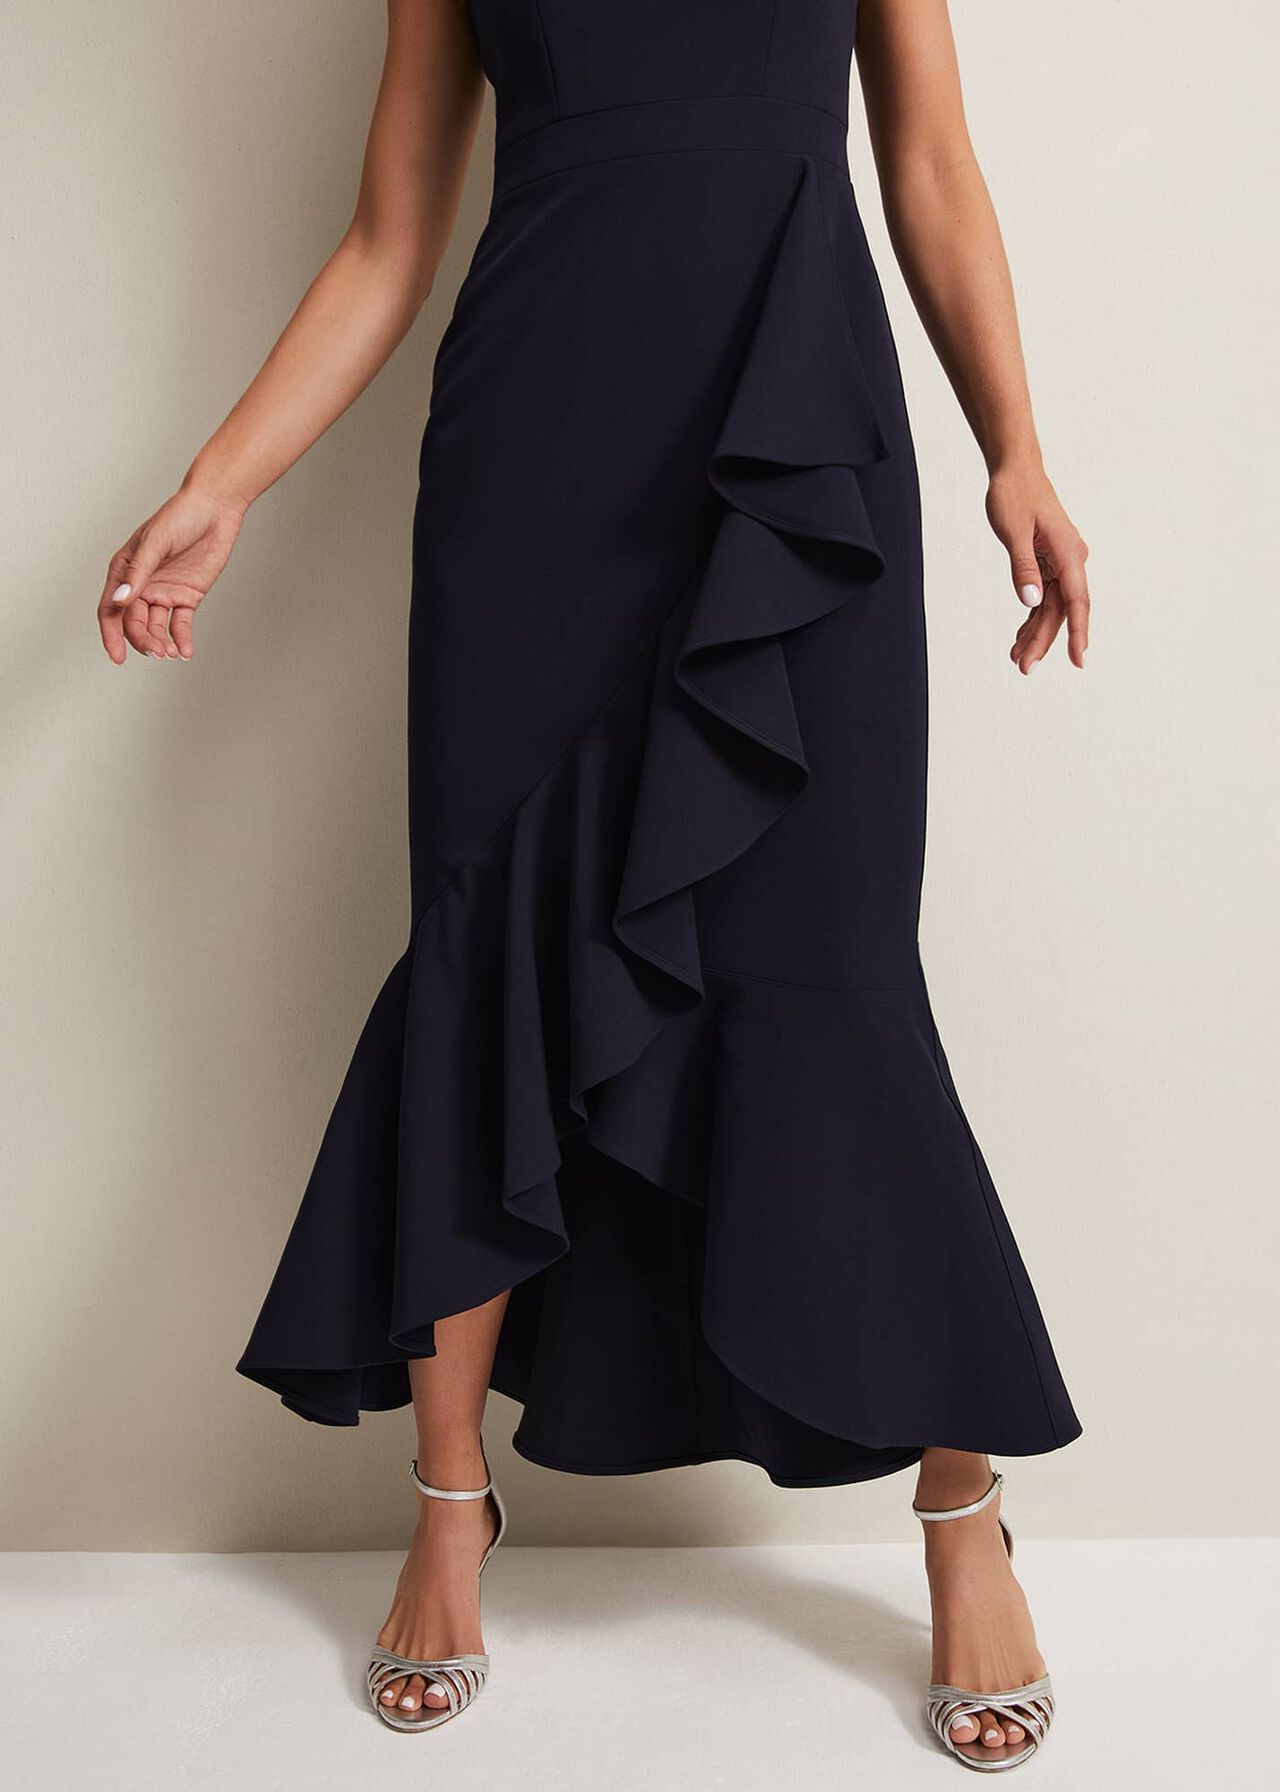 Chantal Navy Jewel Strap Maxi Dress